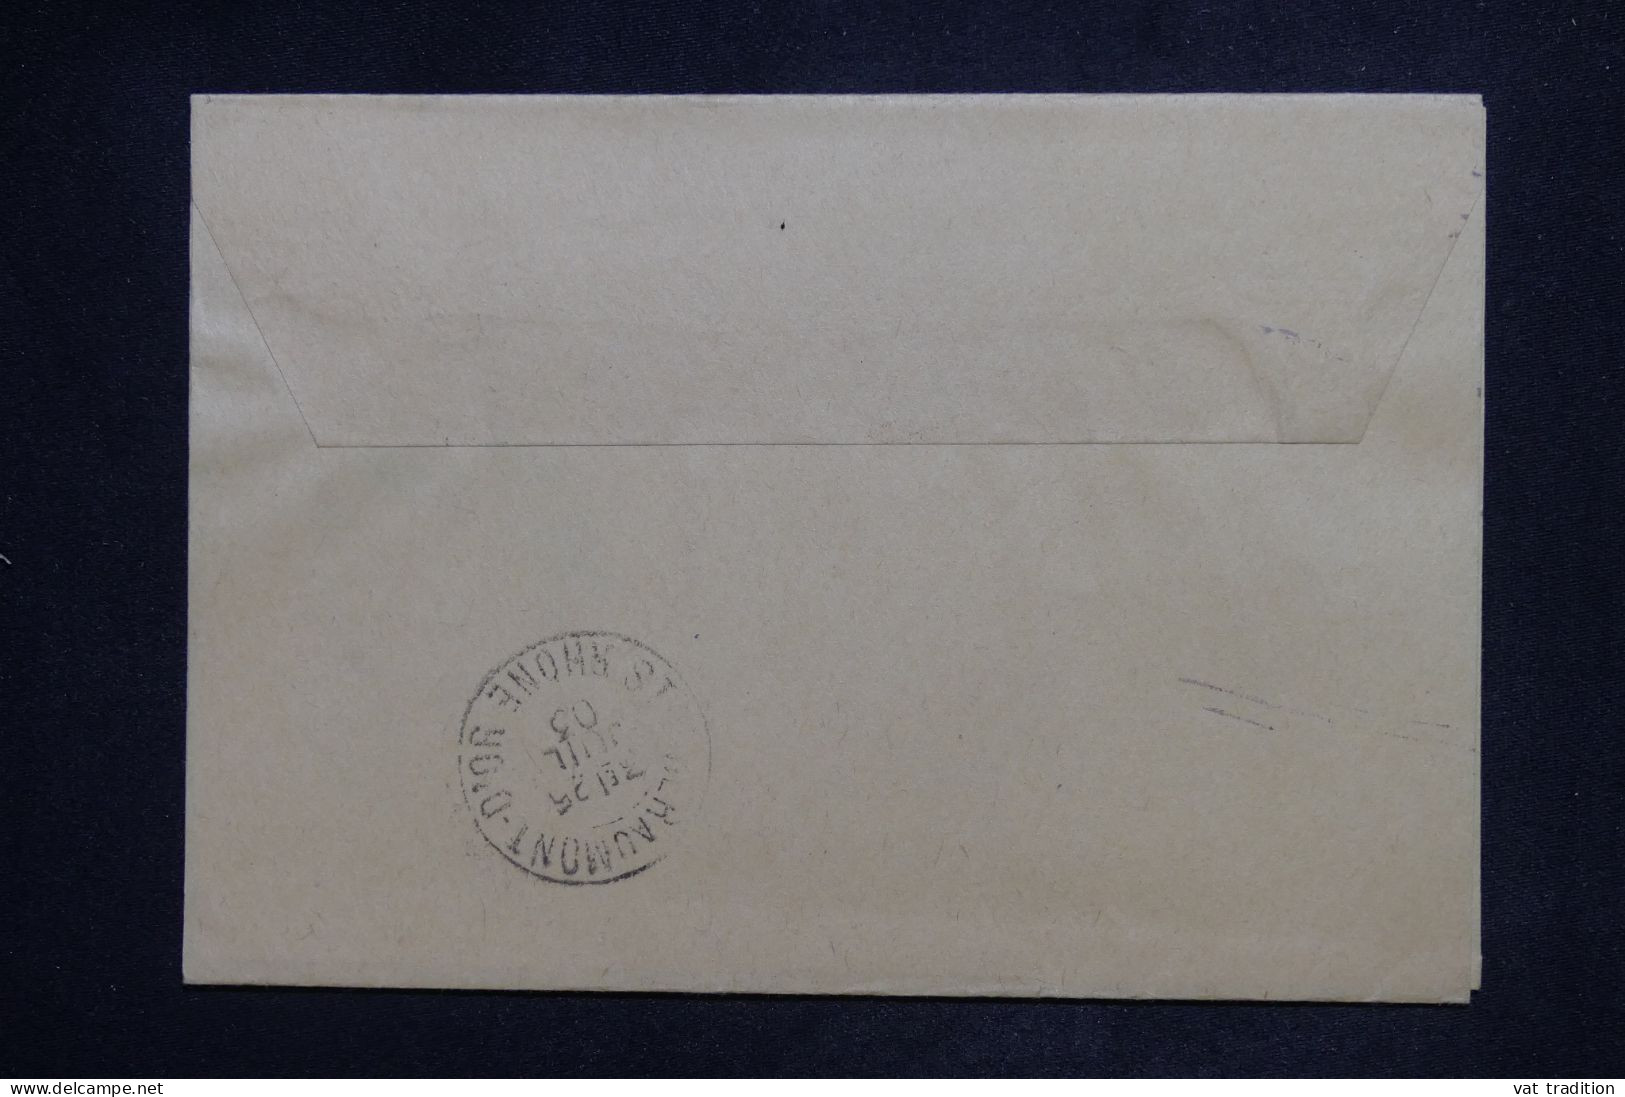 ROYAUME UNI - Entier Postal De Londres Pour La France En 1903 - L 151513 - Luftpost & Aerogramme